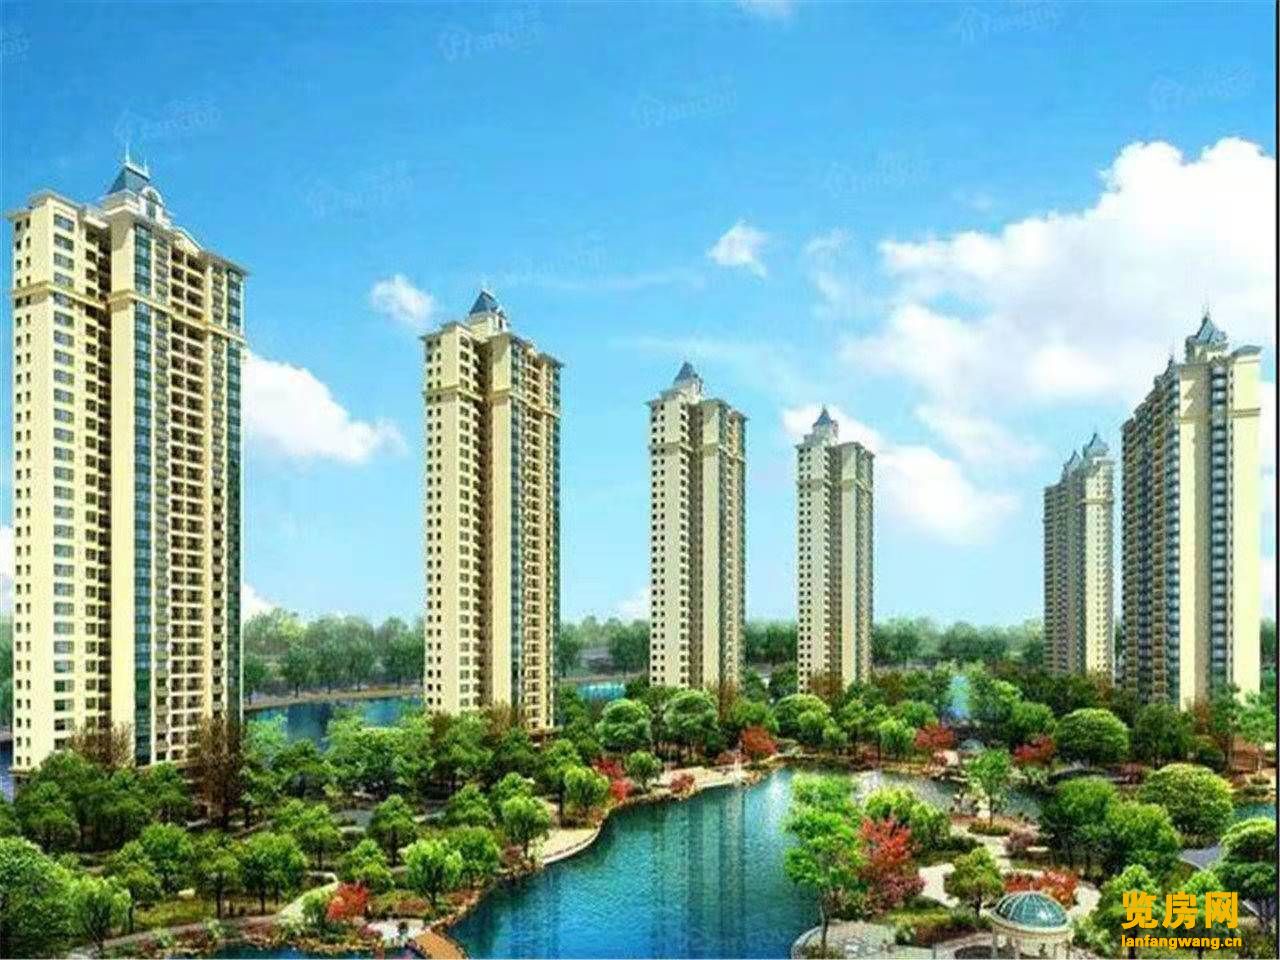 为什么现在深圳没有新建的小产权房 而东莞却有很多新建的呢？